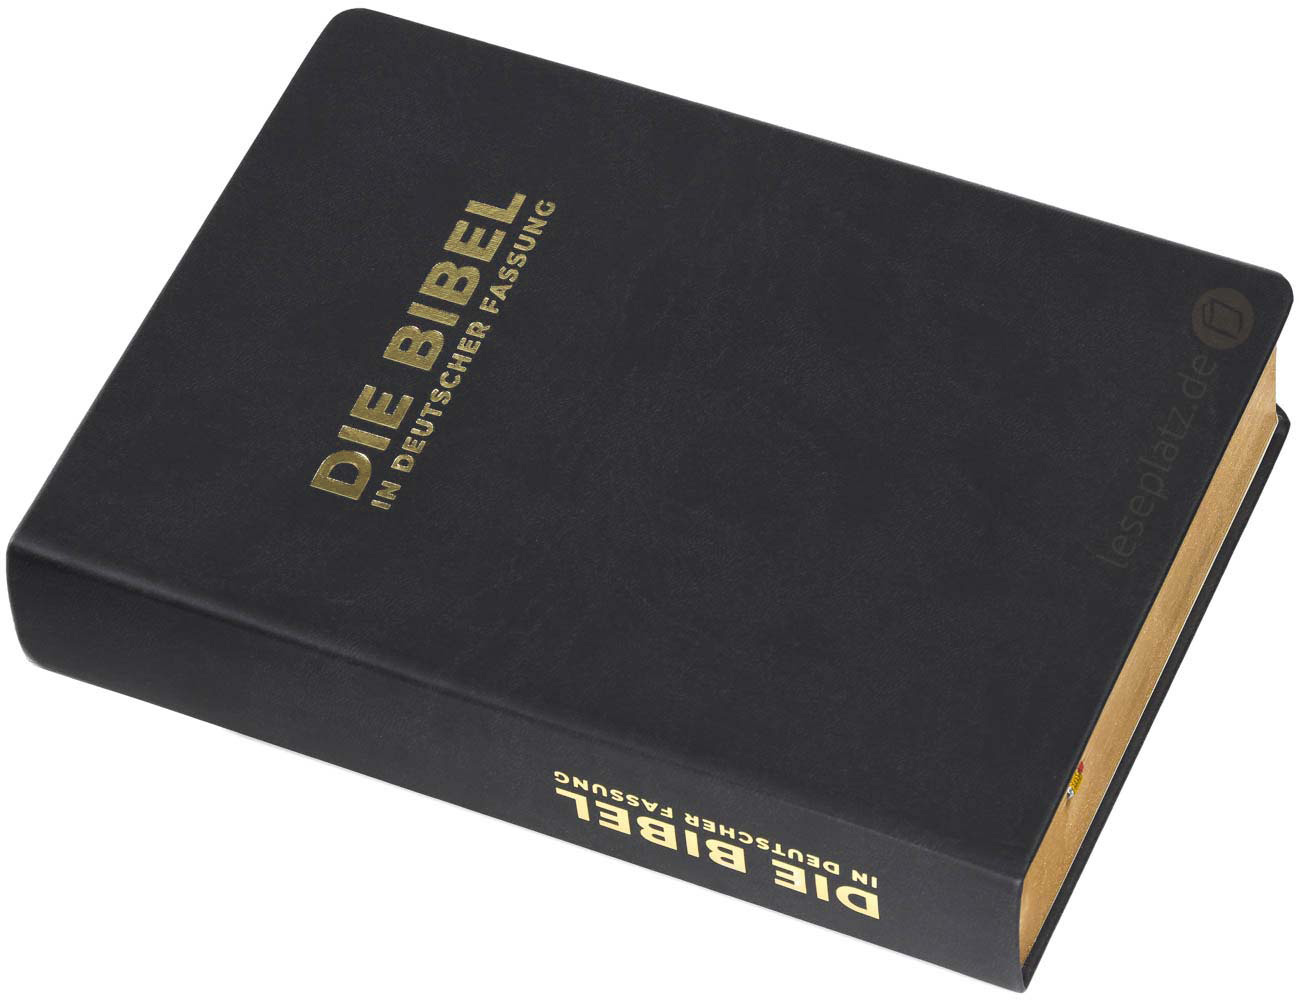 Die Bibel in deutscher Fassung - Standardausgabe / flexibler Einband / Goldschnitt